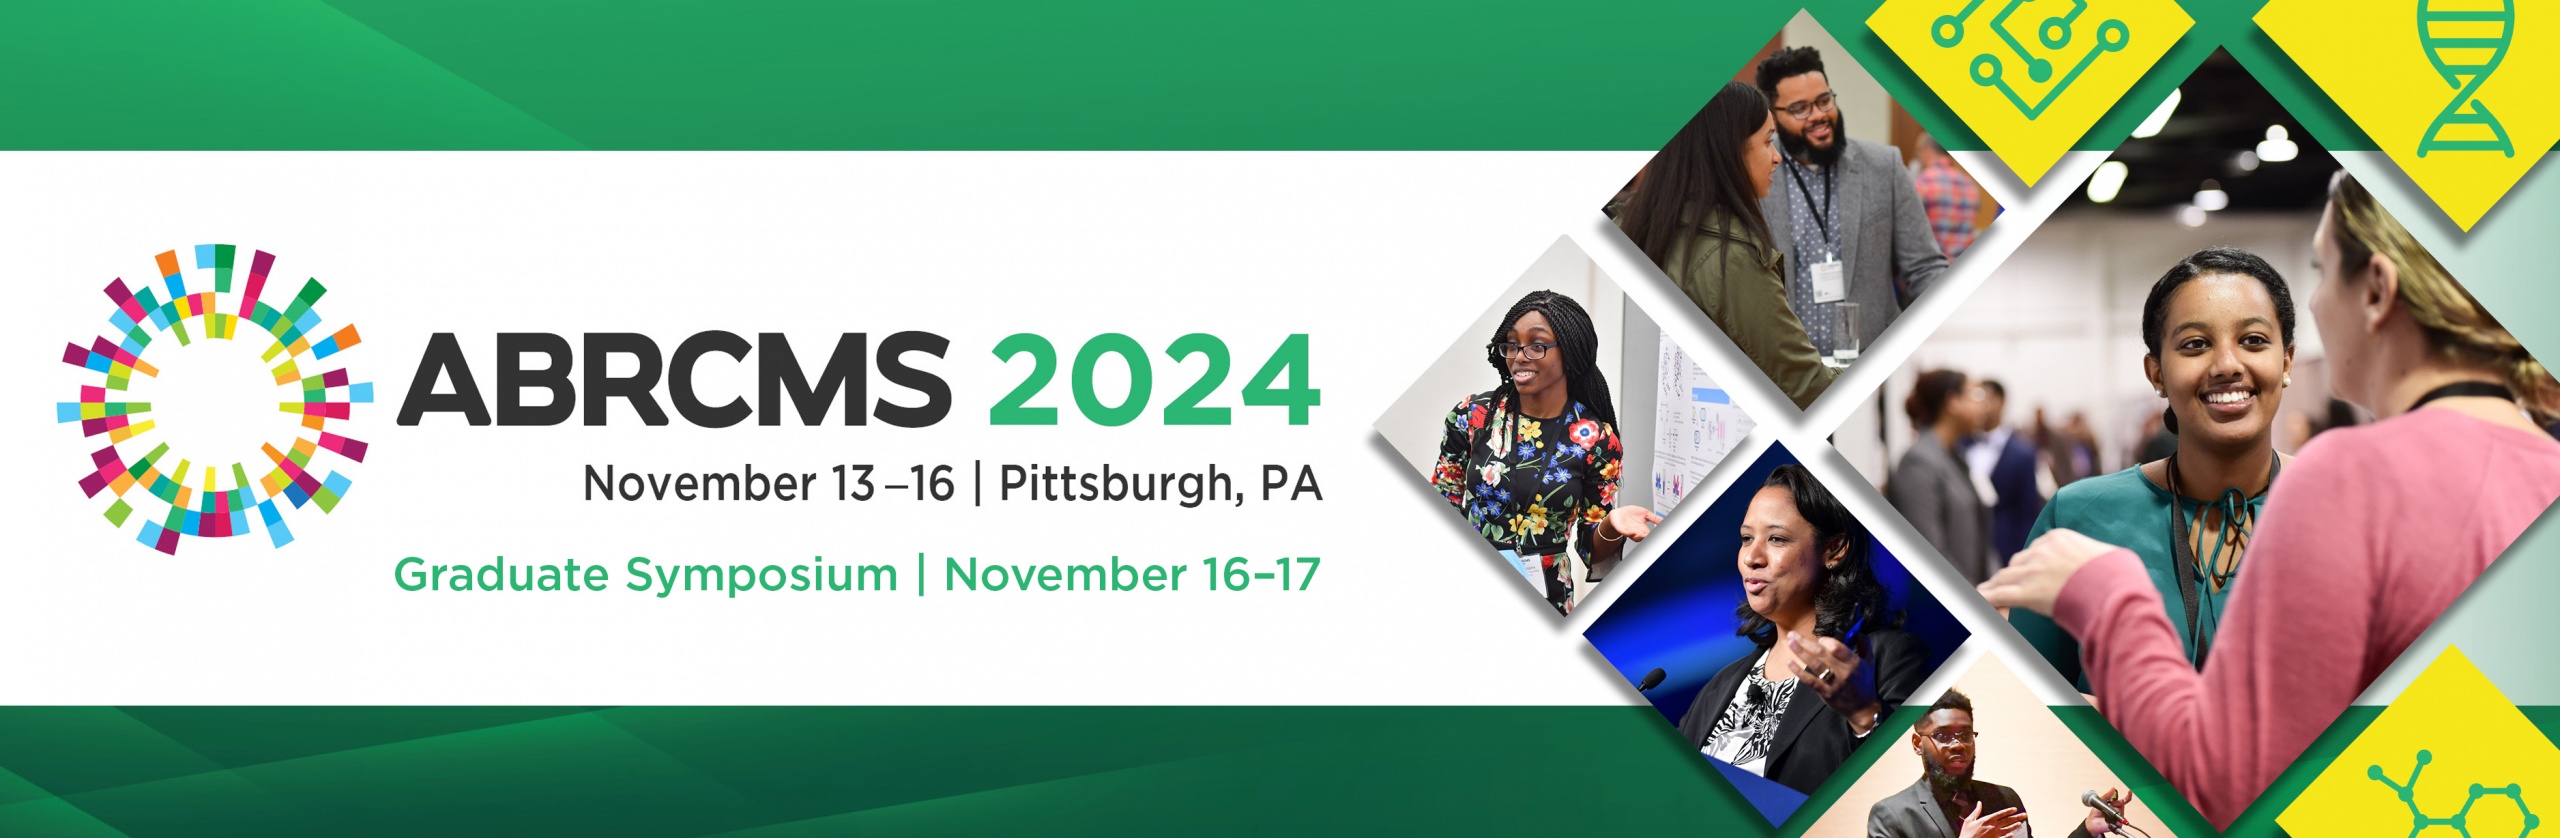 ABRCMS 2024, November 13 - 16 | Pittsburgh, PANovember 13 - 16 | Pittsburgh, PA